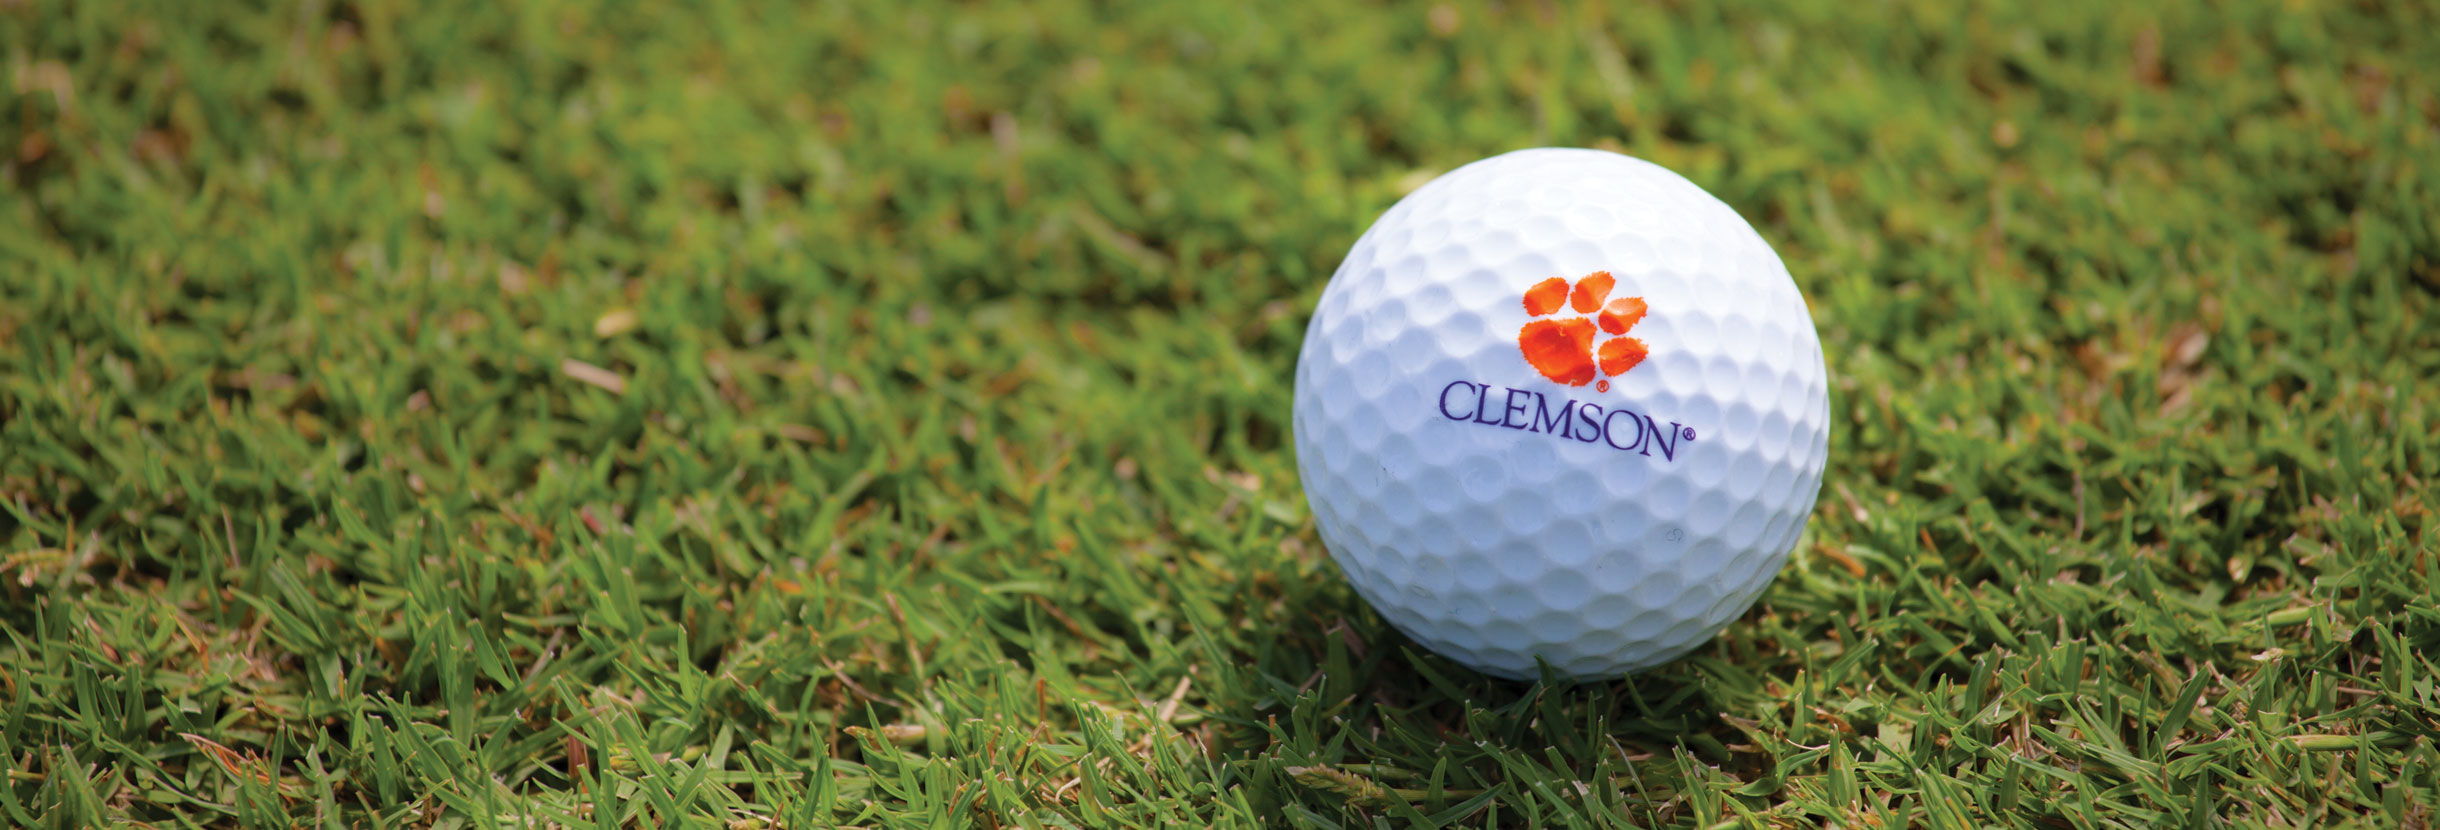 Clemson golf ball sitting in the grass